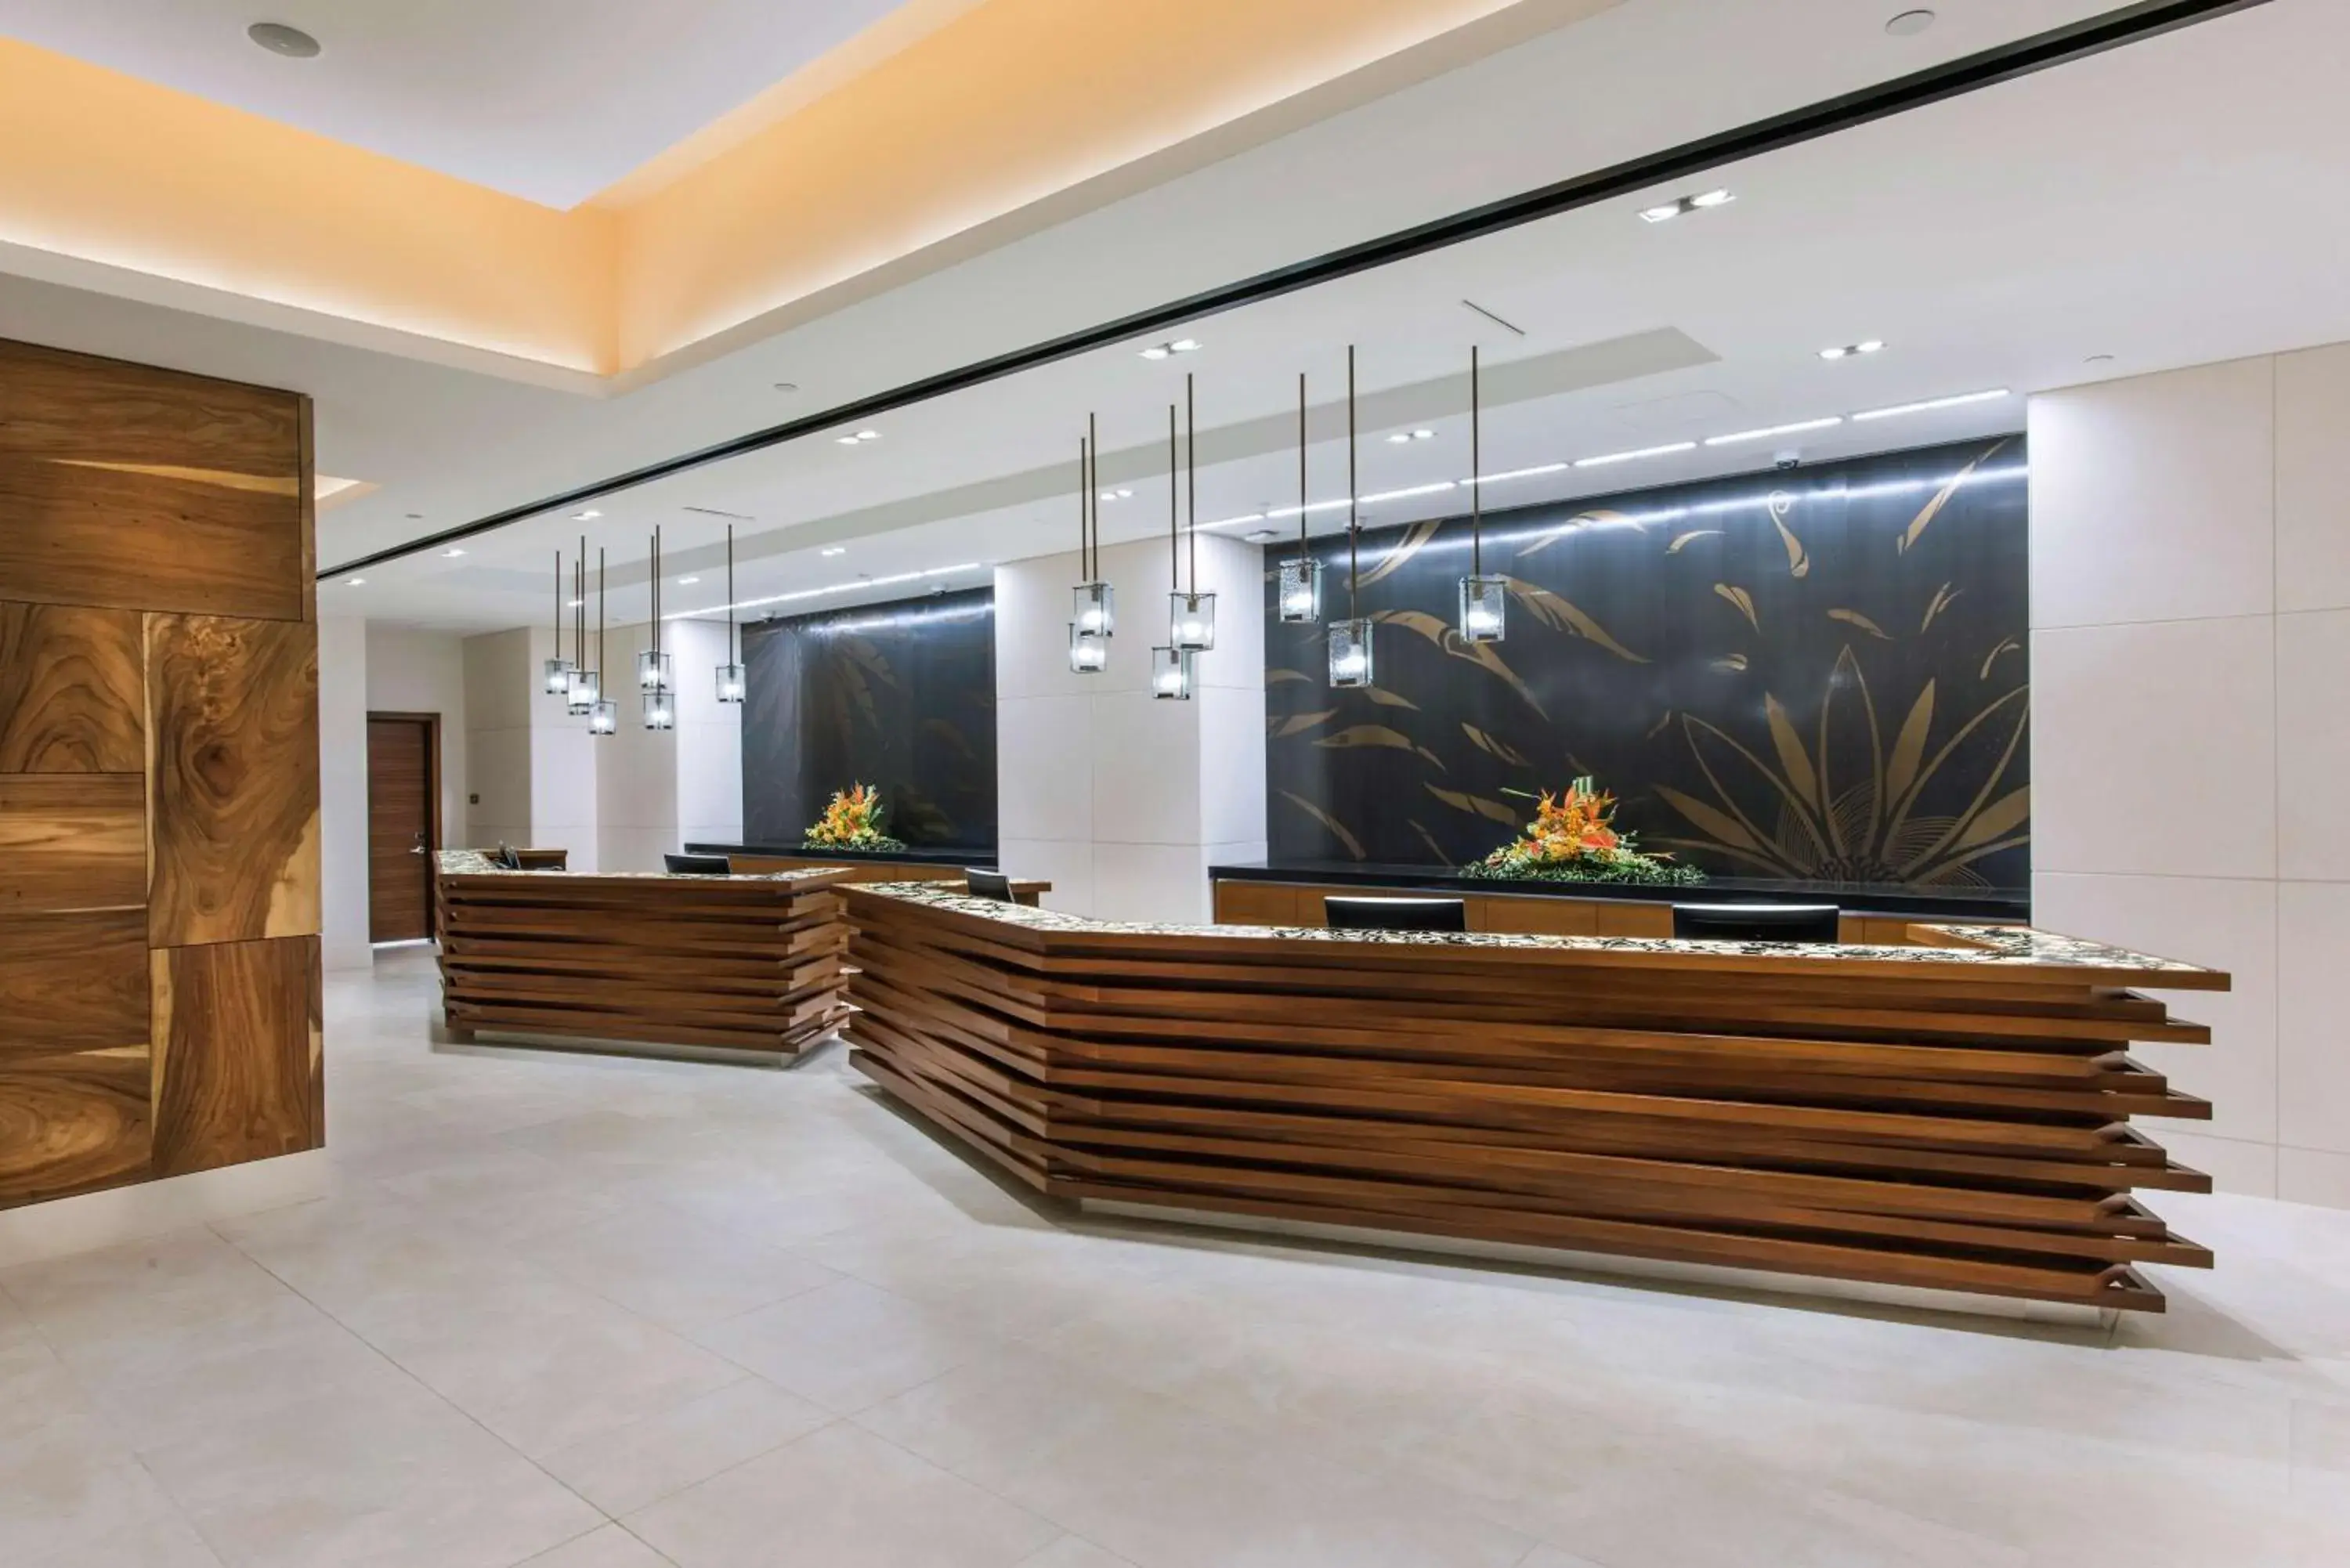 Lobby or reception, Lobby/Reception in Hilton Grand Vacation Club The Grand Islander Waikiki Honolulu